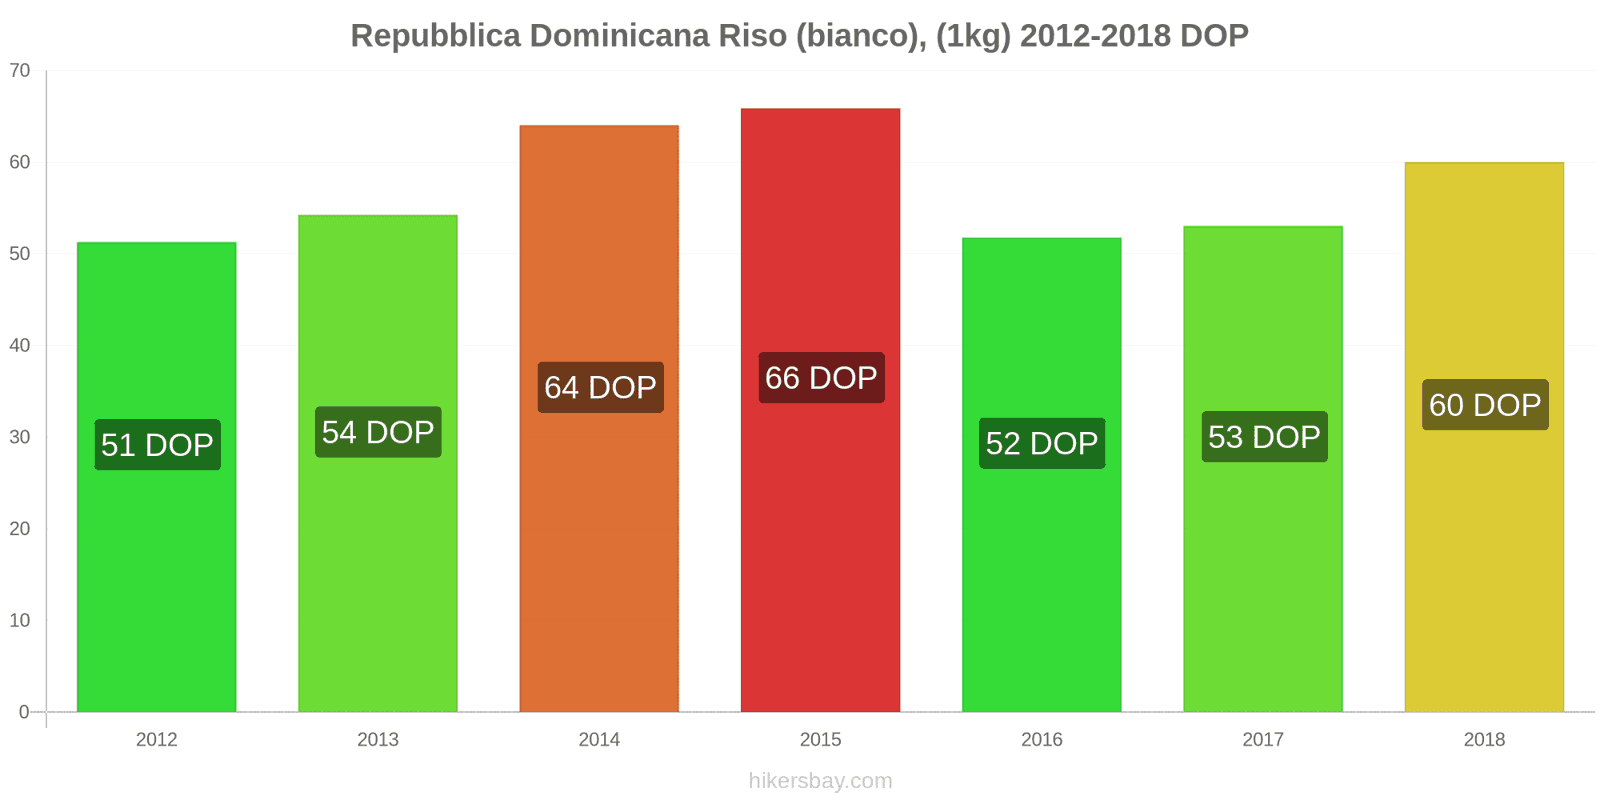 Repubblica Dominicana cambi di prezzo Chilo di riso bianco hikersbay.com